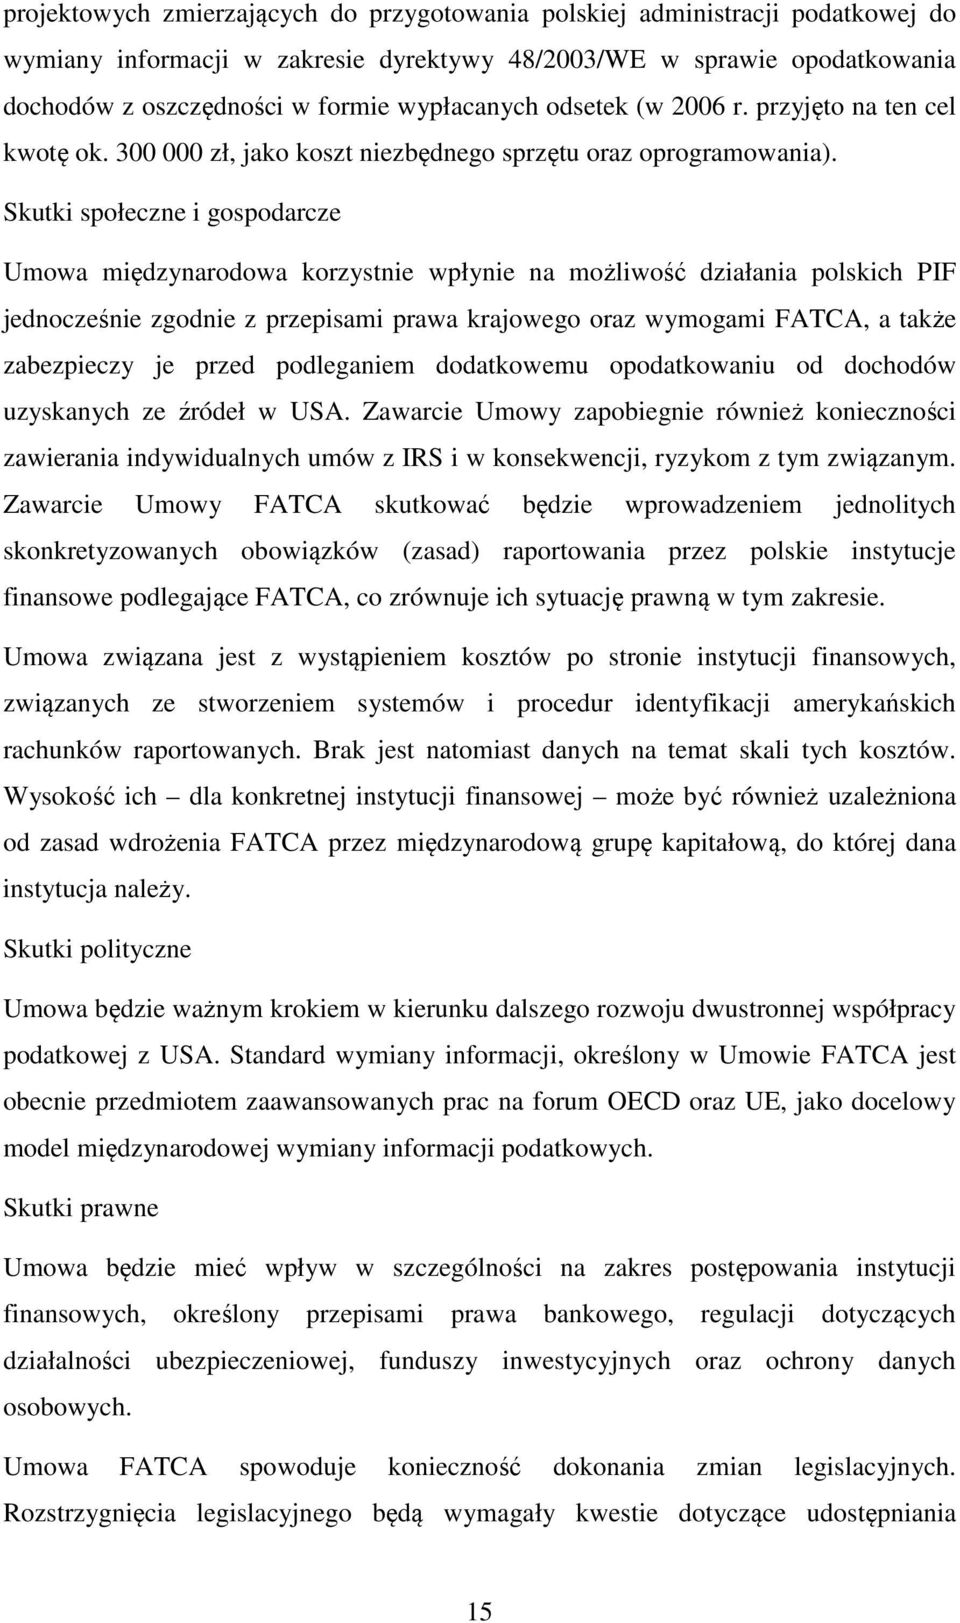 Skutki społeczne i gospodarcze Umowa międzynarodowa korzystnie wpłynie na możliwość działania polskich PIF jednocześnie zgodnie z przepisami prawa krajowego oraz wymogami FATCA, a także zabezpieczy